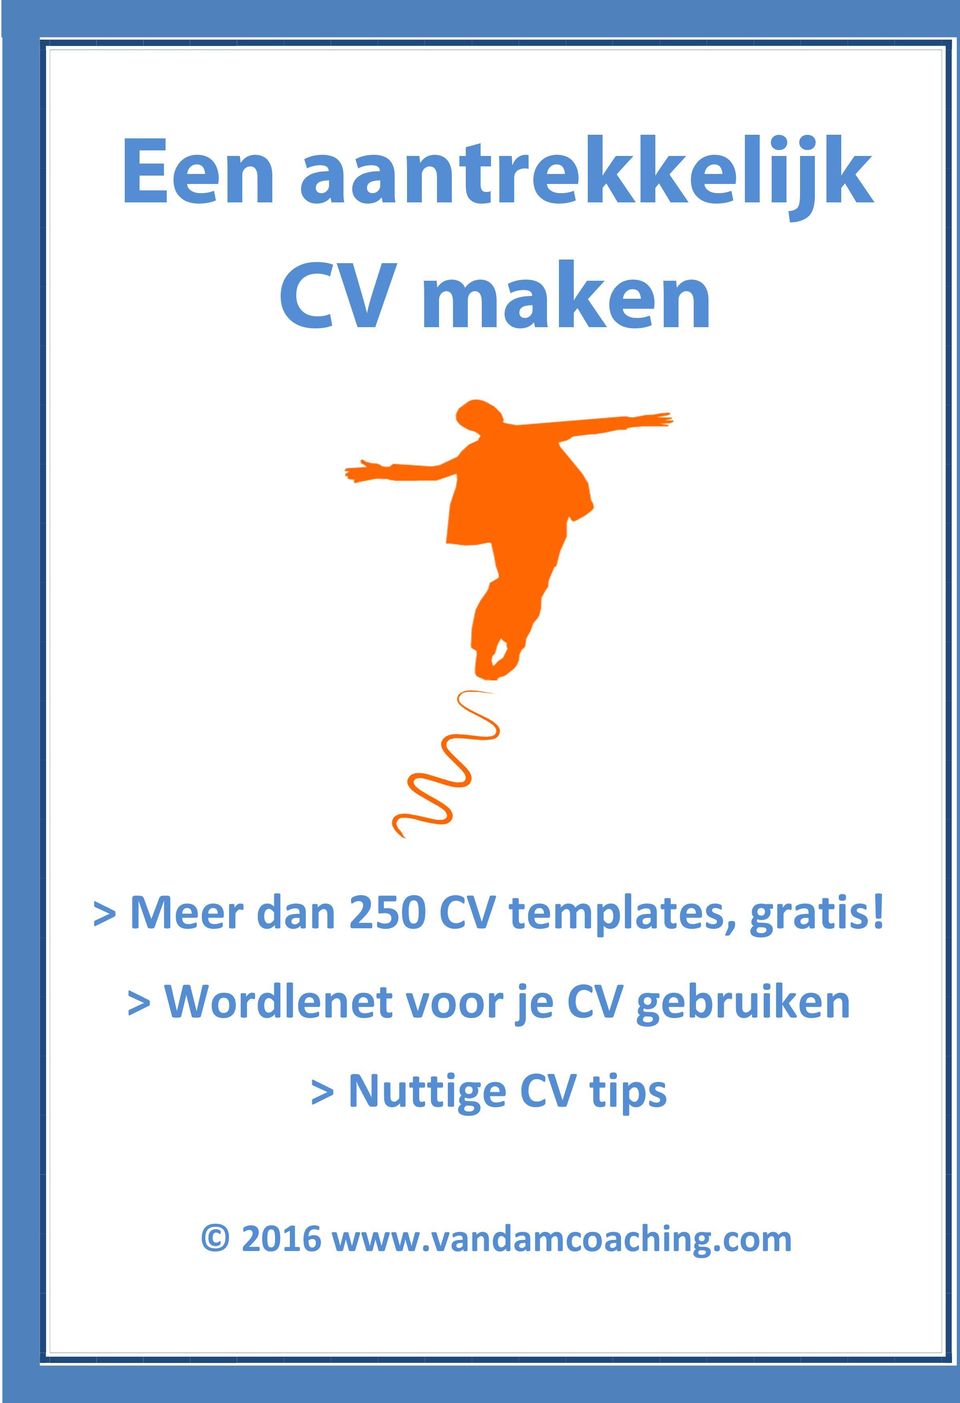 > Wordlenet voor je CV gebruiken >